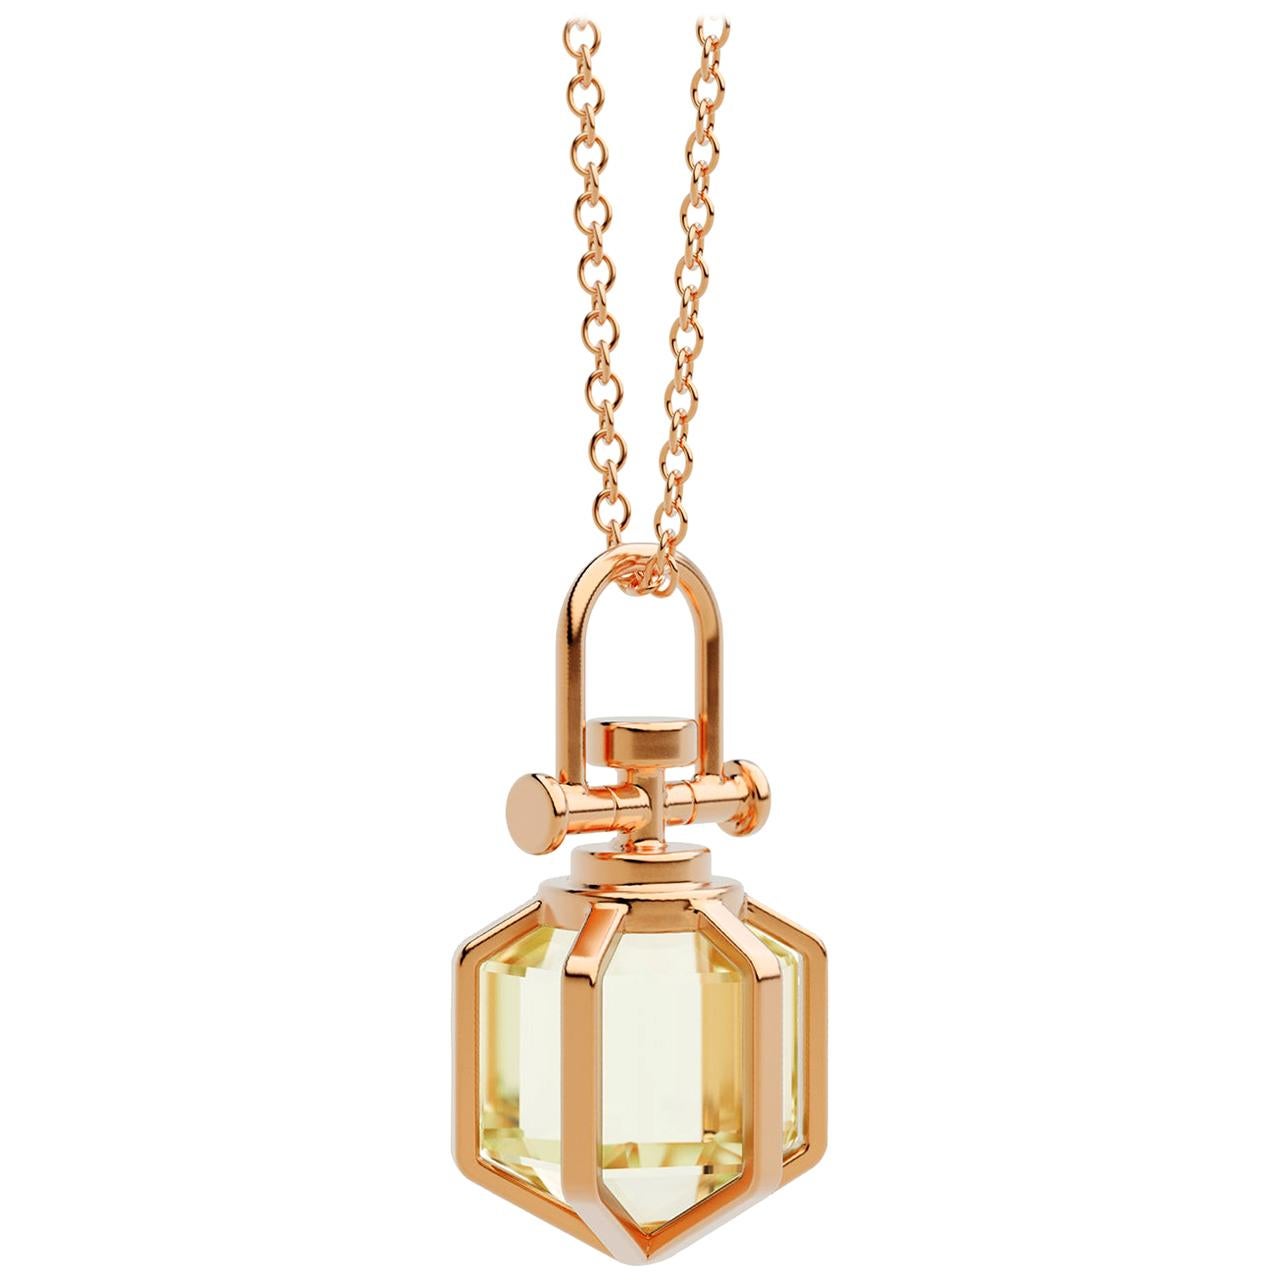 Modern Sacred 18k Solid Rose Gold Talisman Pendant Necklace with Lemon Citrine